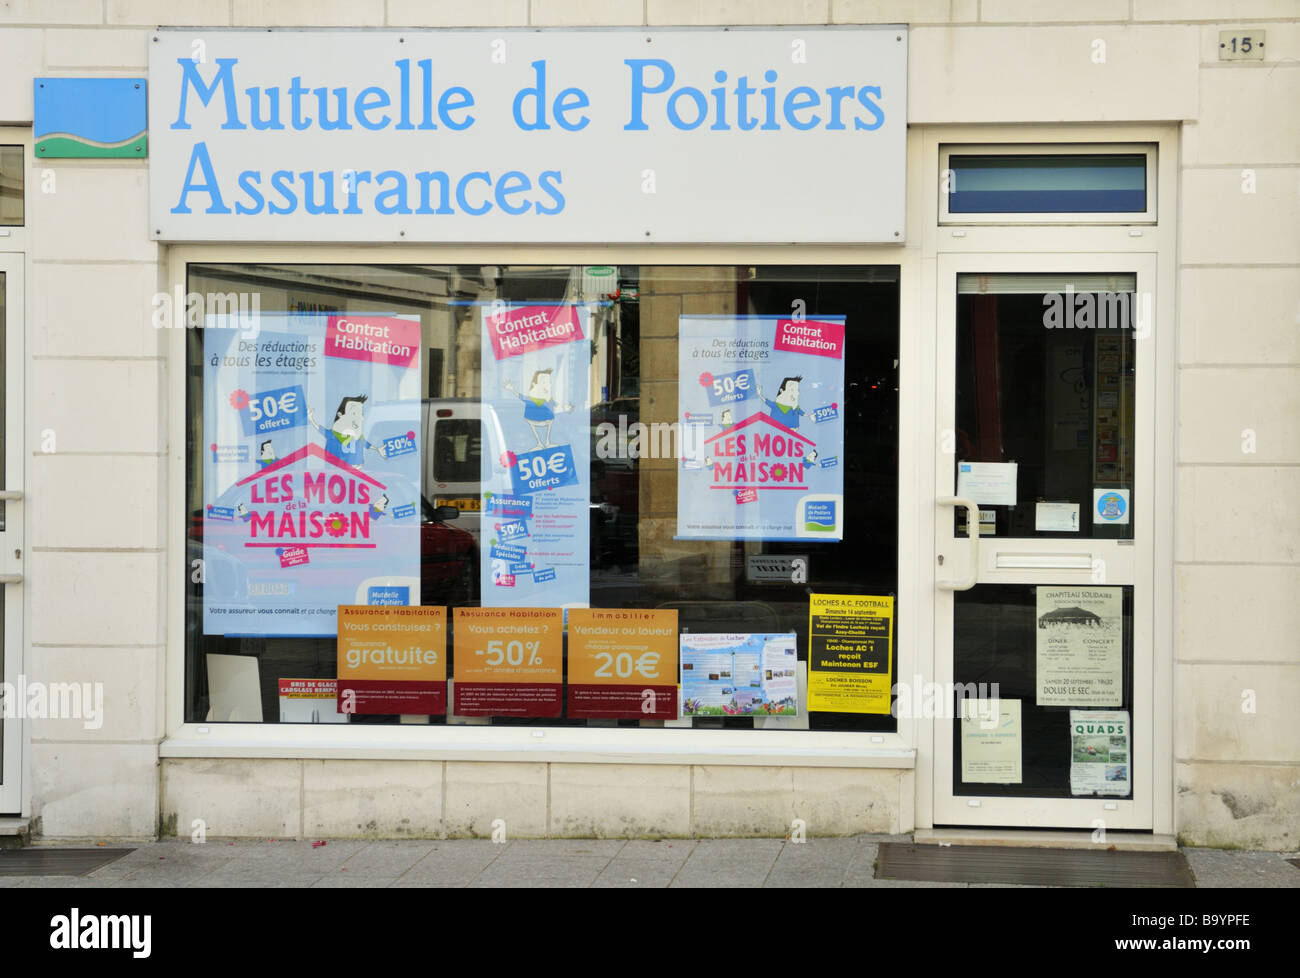 Mutuelle de Poitiers Assurances, France. Stock Photo